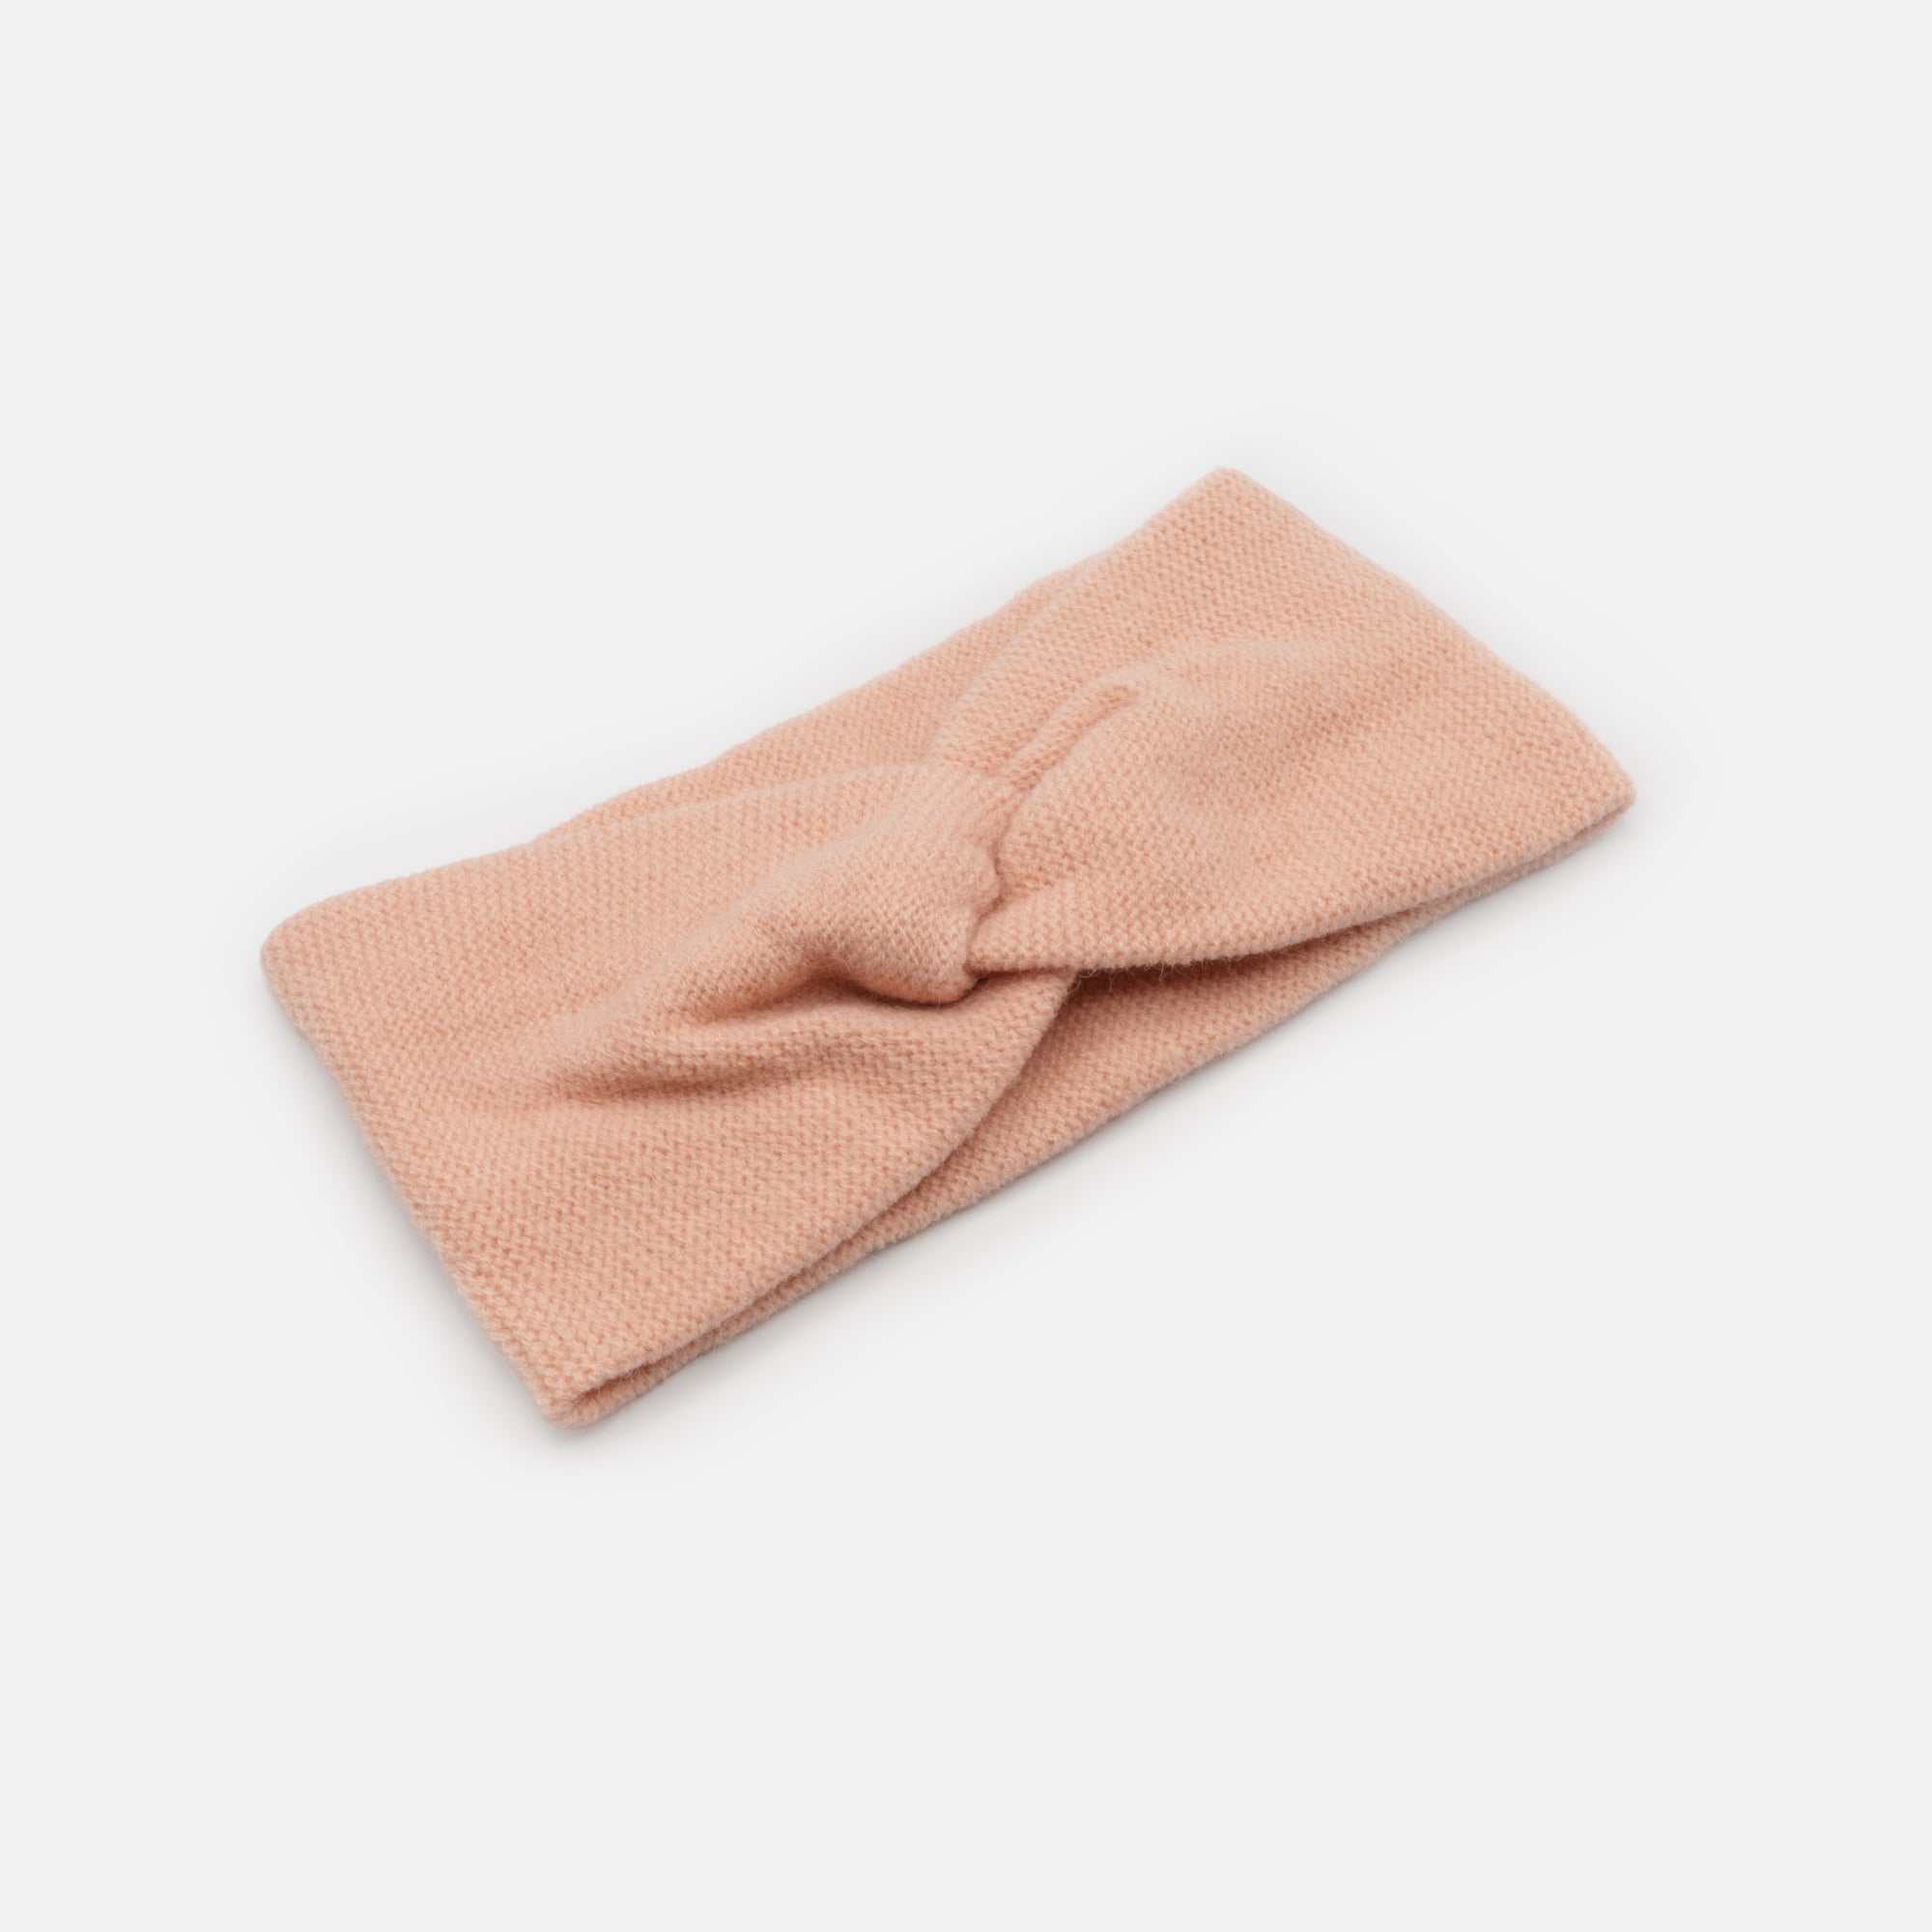 Bandeau vieux rose en tricot à petites mailles avec boucle